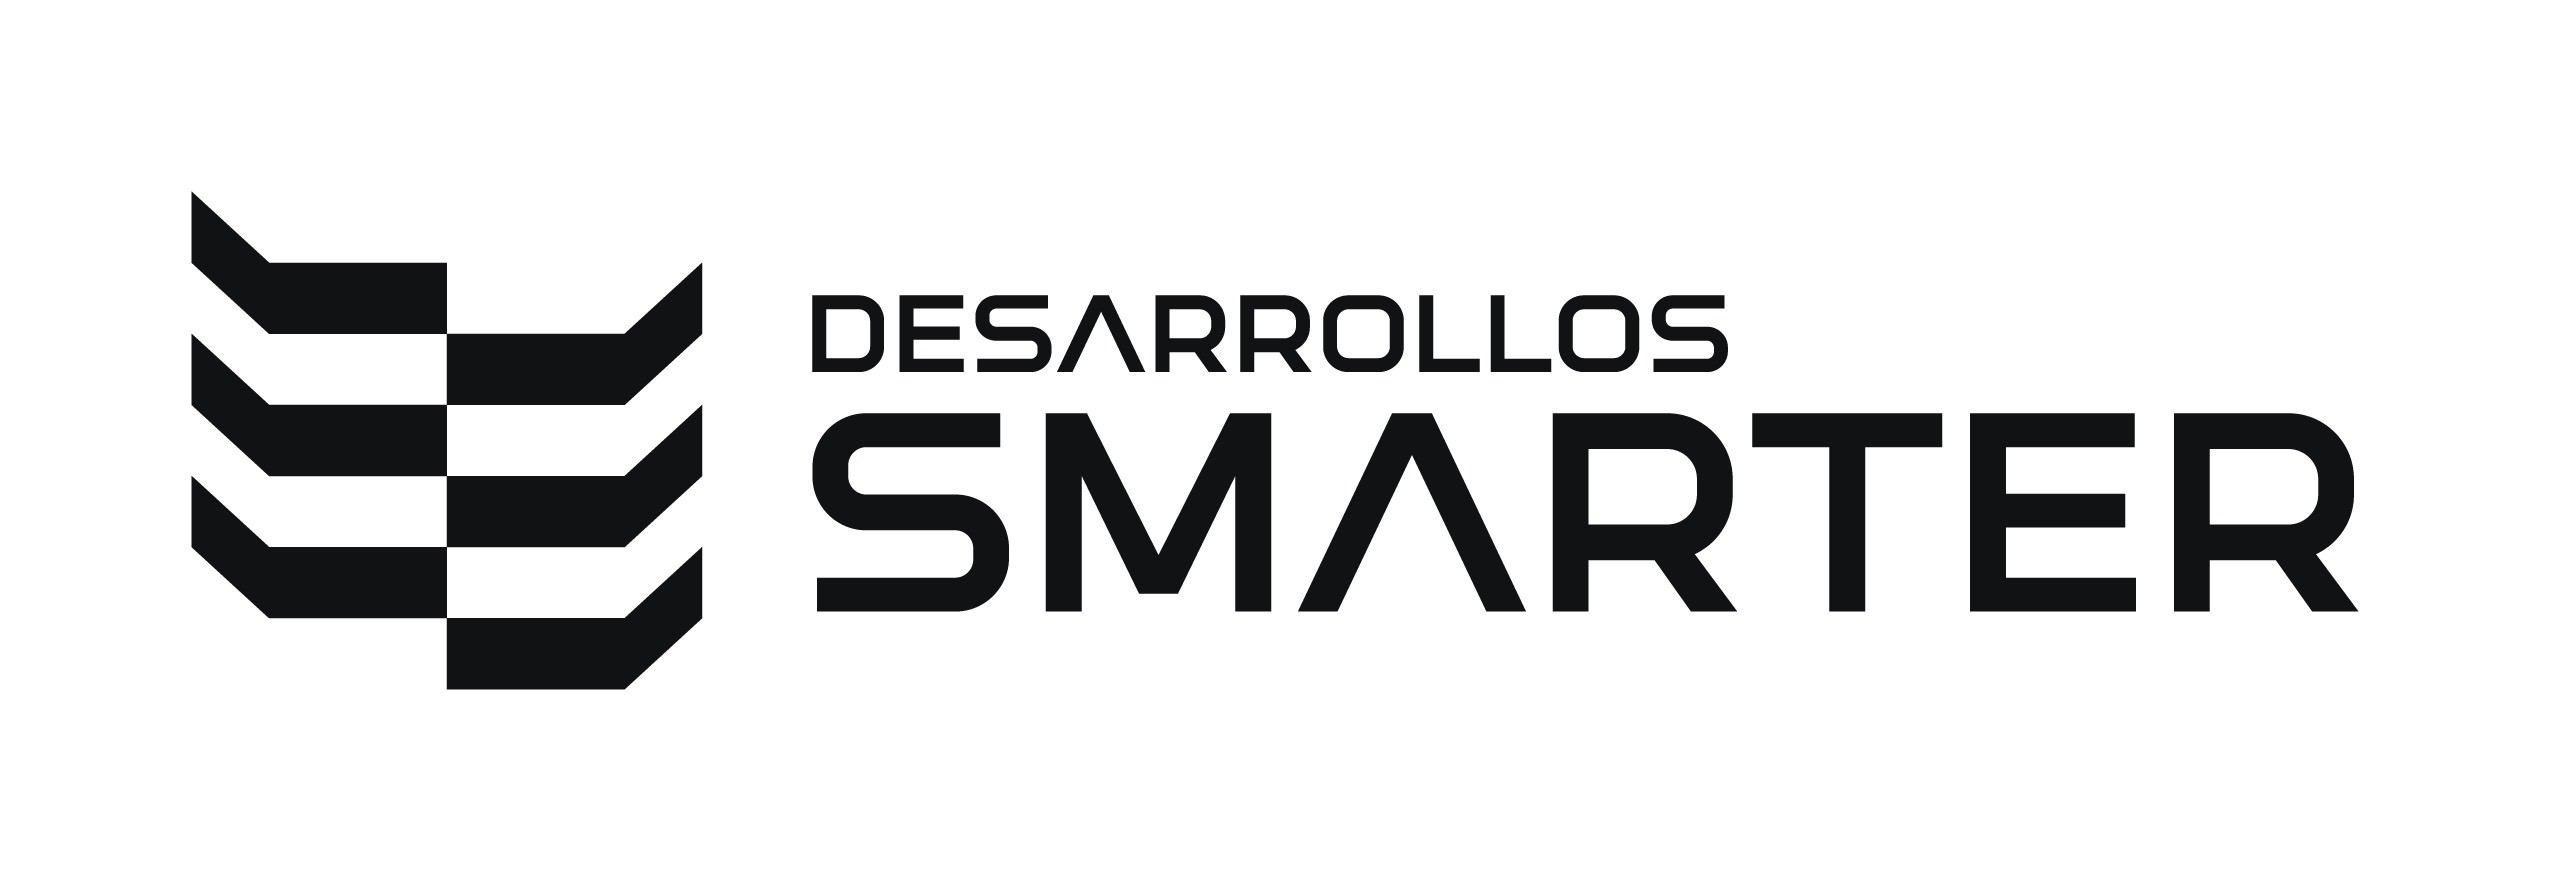 DESARROLLOS SMARTER